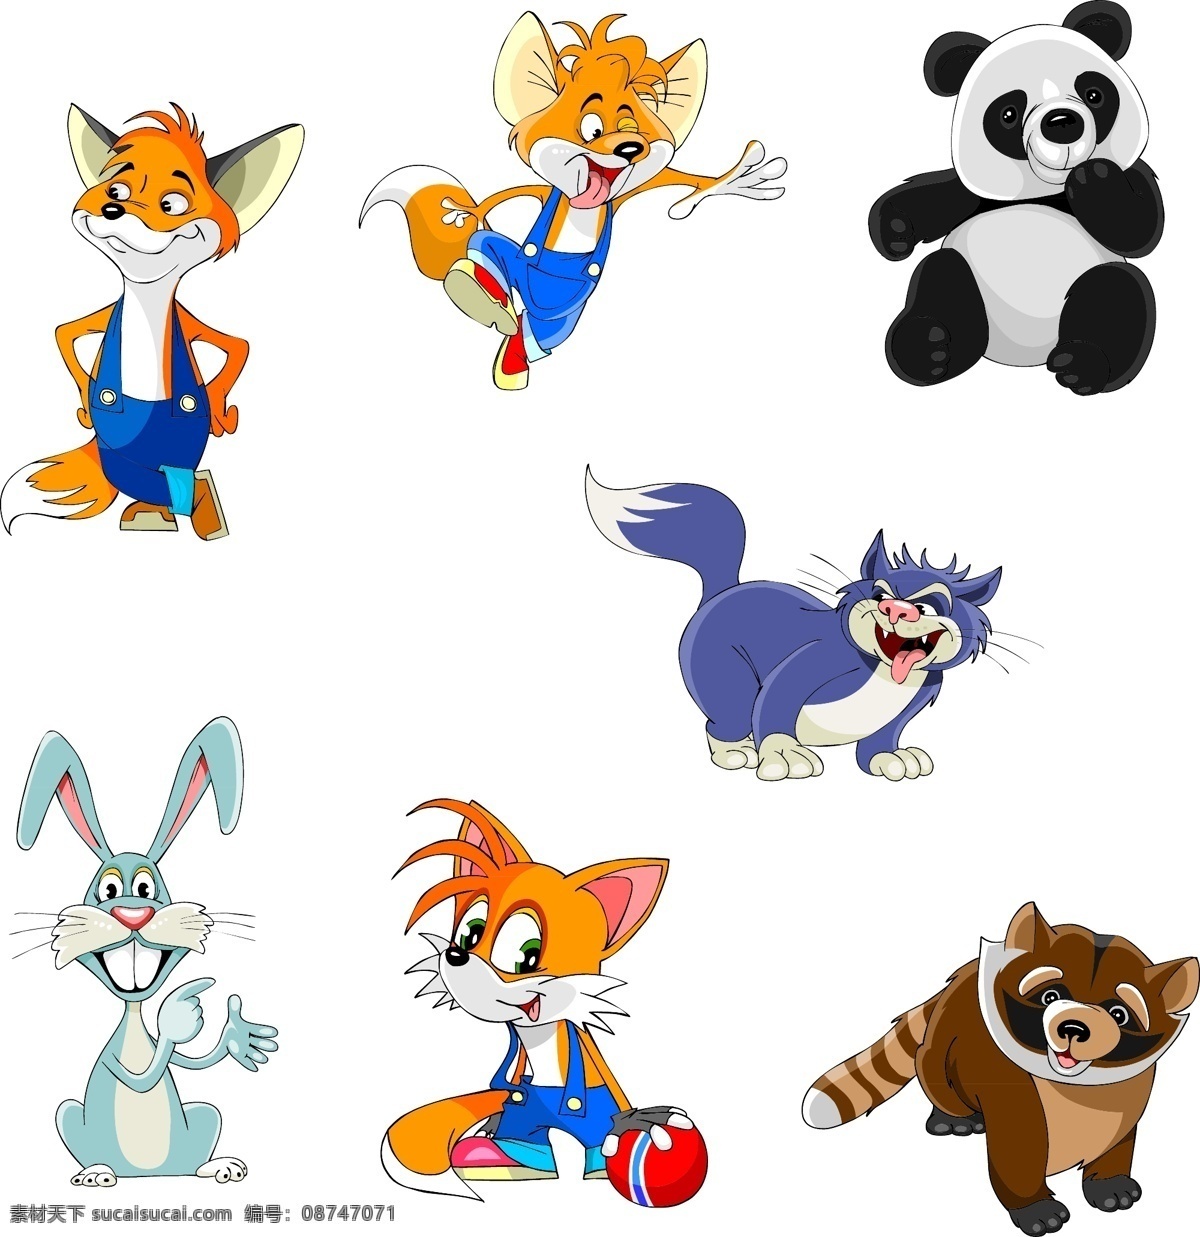 小兔子 小狐狸 浣熊 狐狸 兔子 熊猫 小猫 卡通动物 小动物 可爱动物 卡通设计